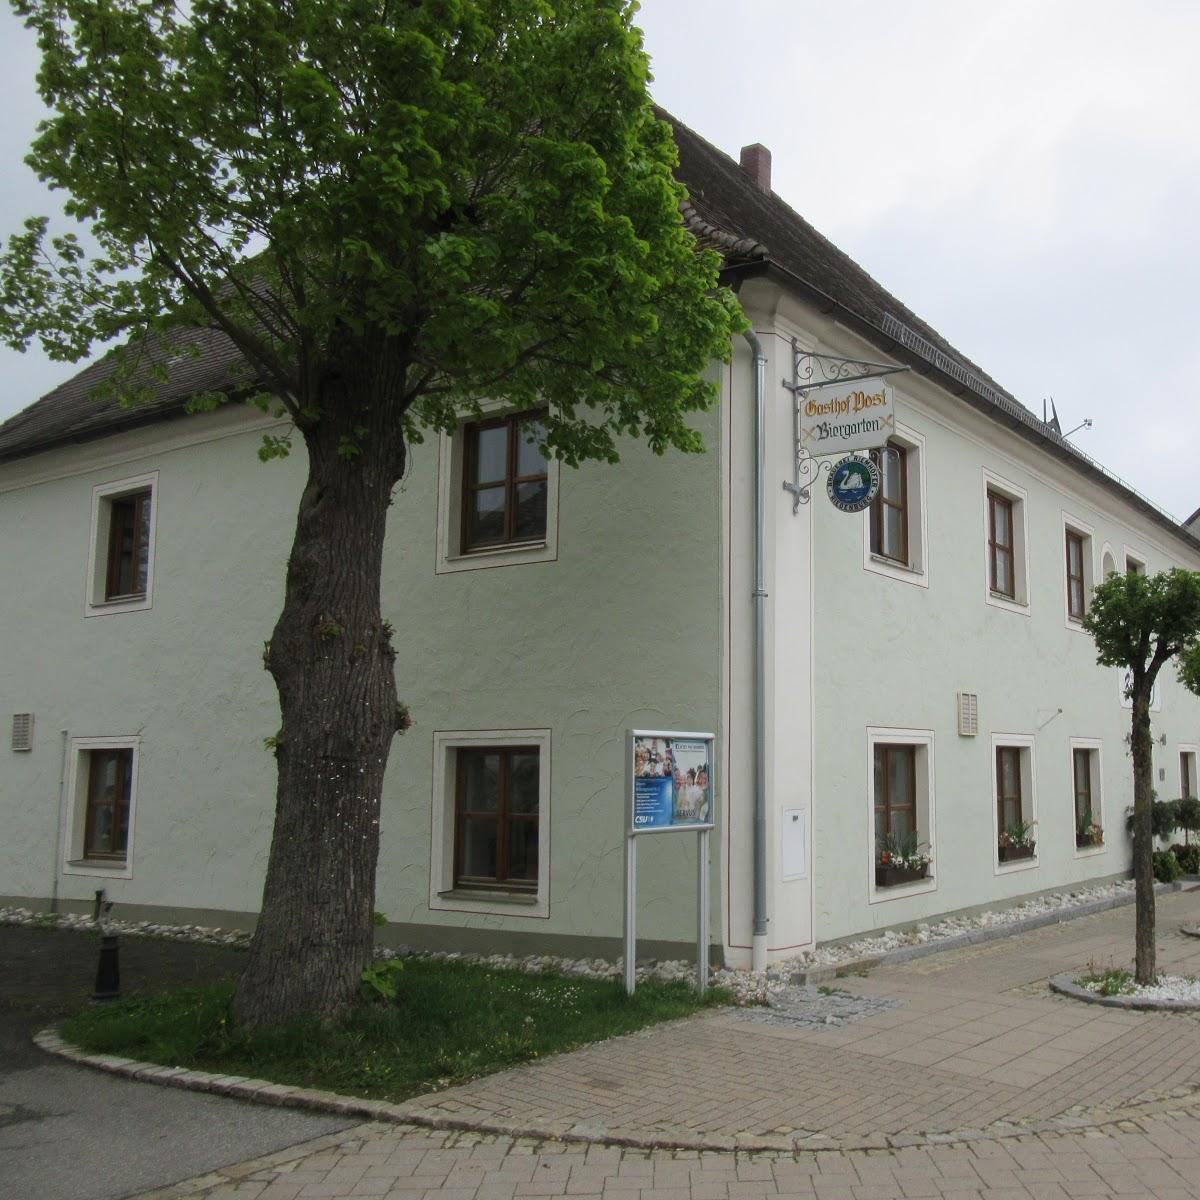 Restaurant "Gasthof Zur Post" in  Hemau